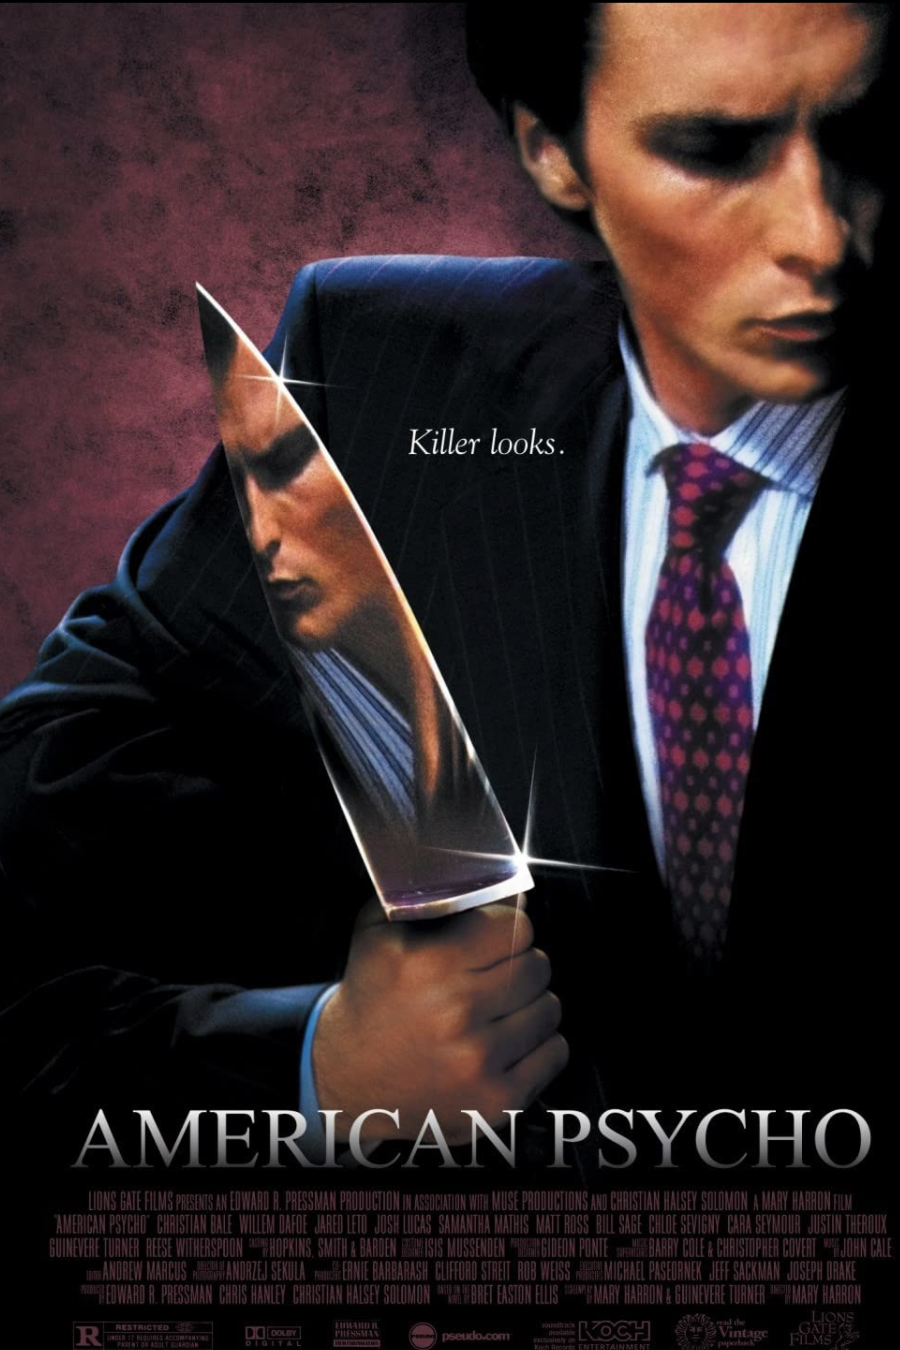 serial killer movie